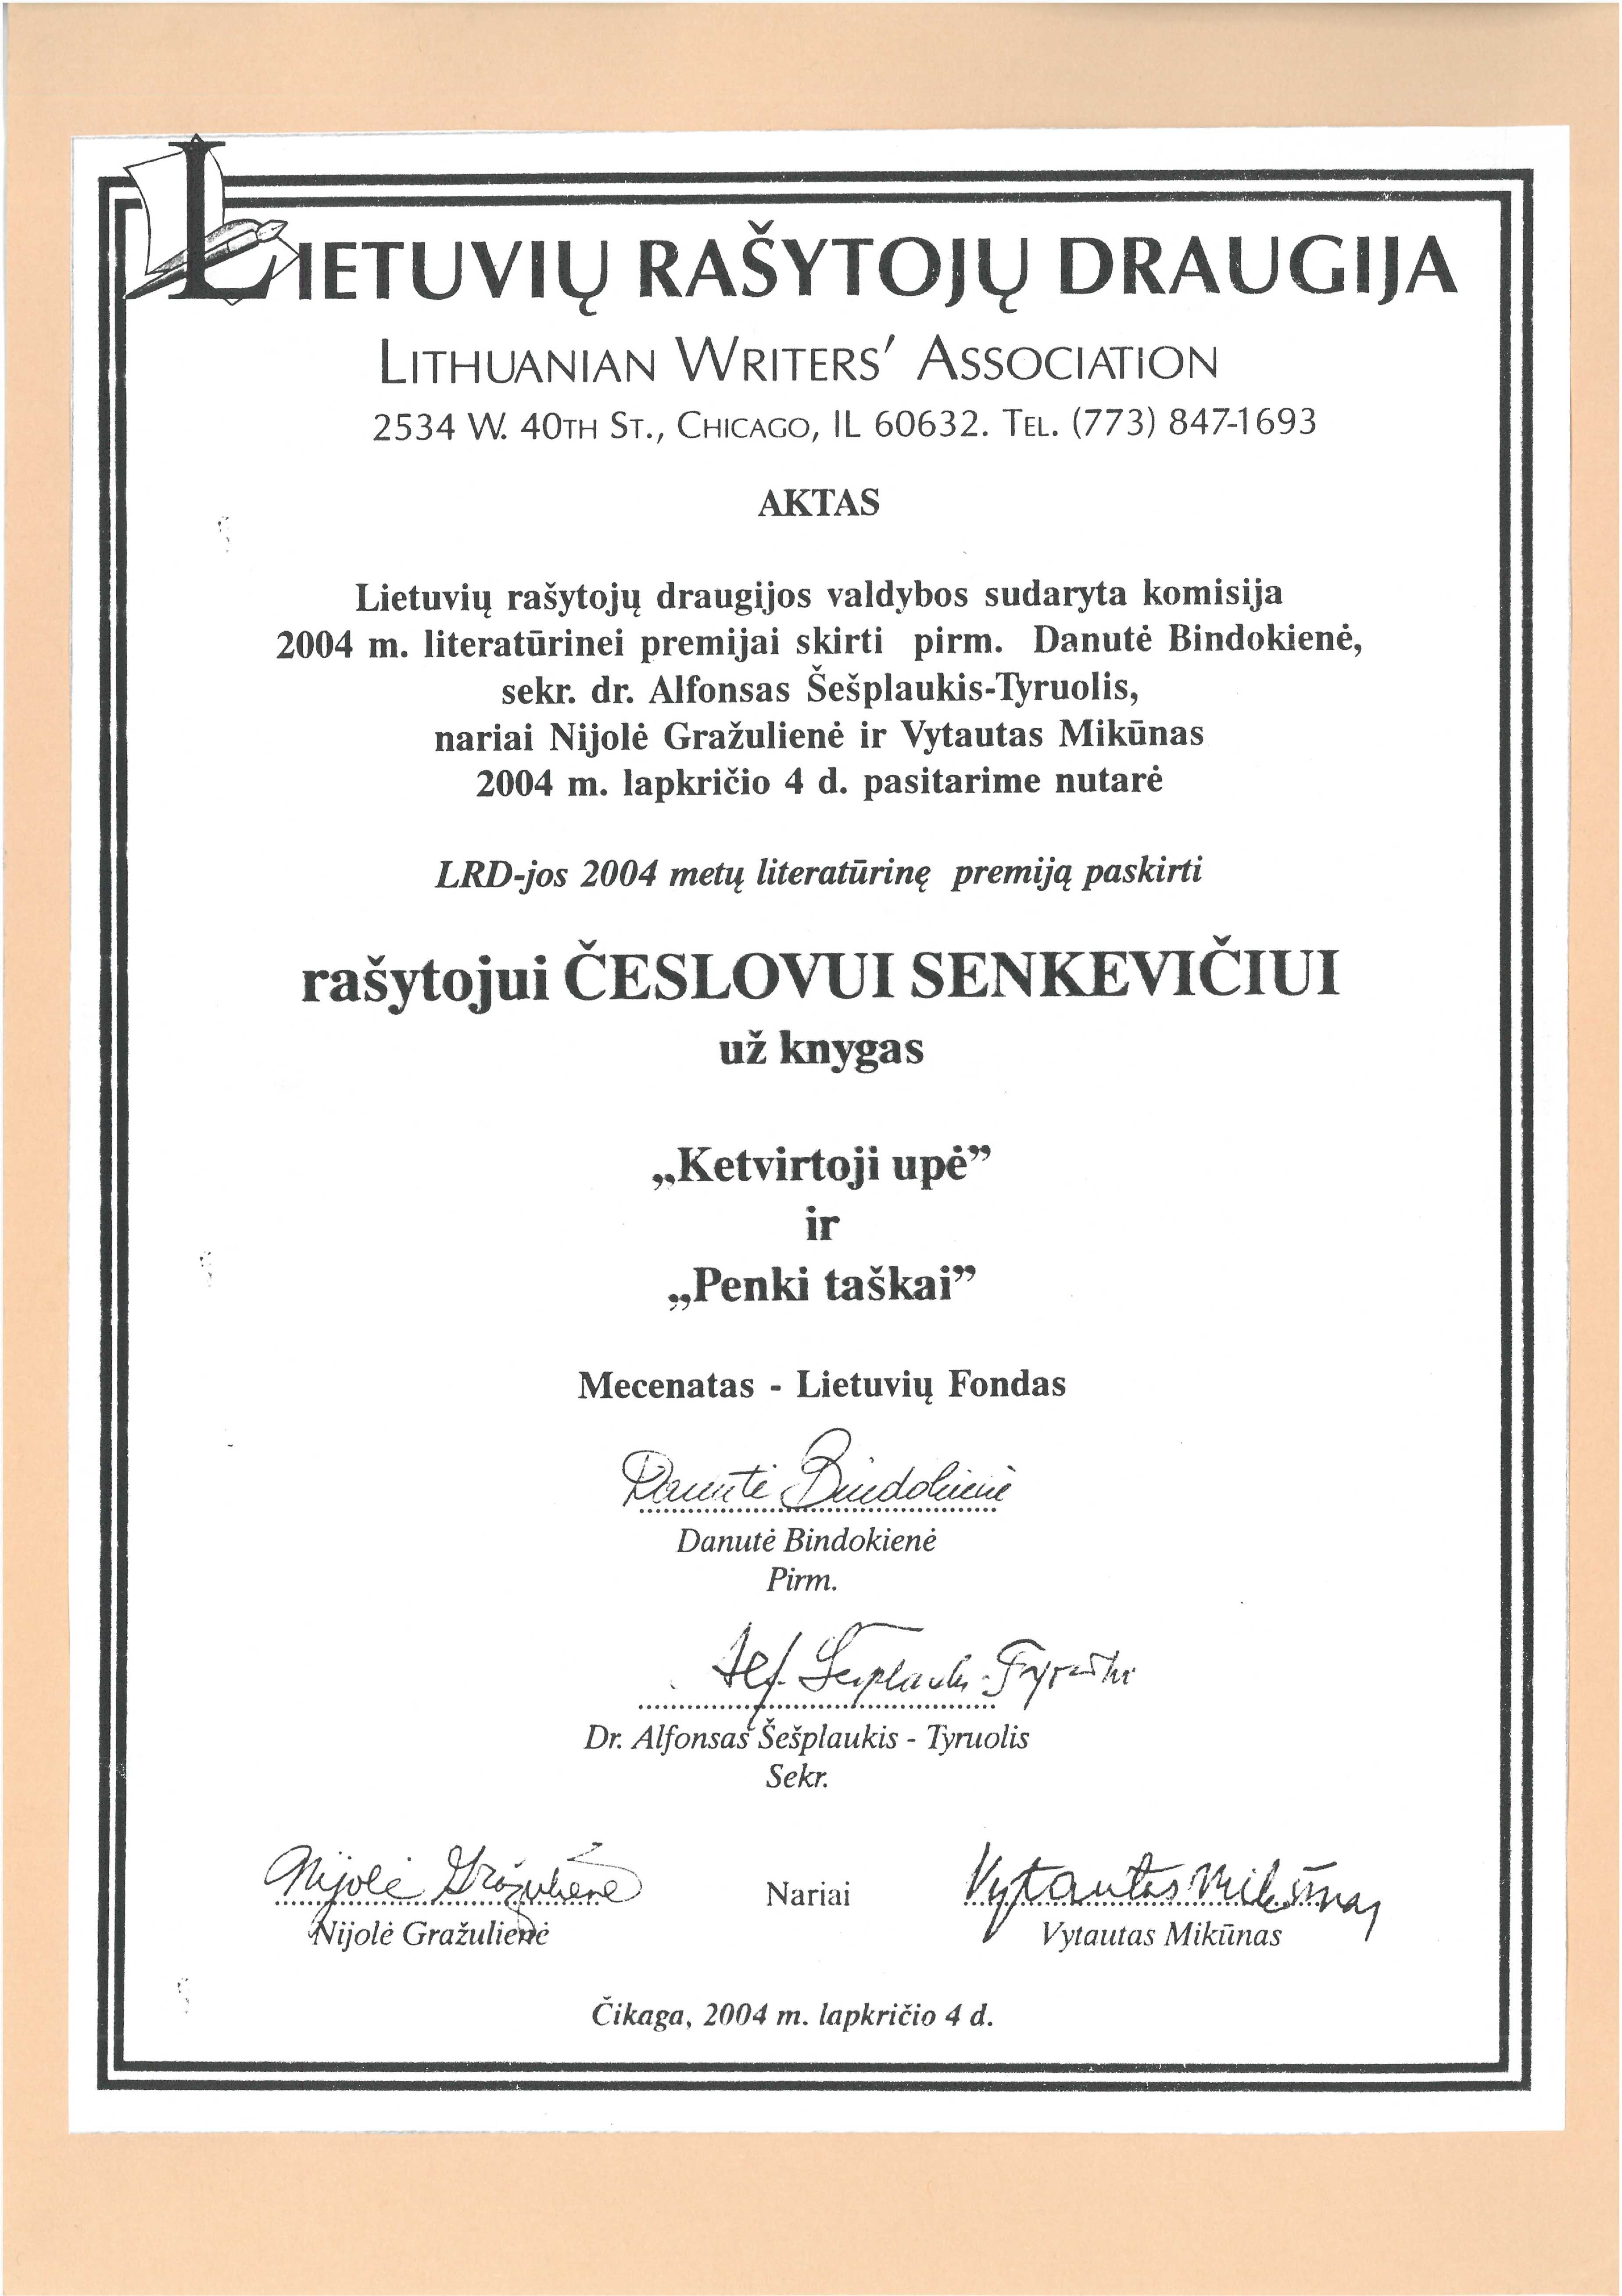 Lietuvių rašytojų draugijos literatūrinės premijos aktas Česlovui Senkevičiui. Čikaga, 2004 m. lapkričio 4 d. 